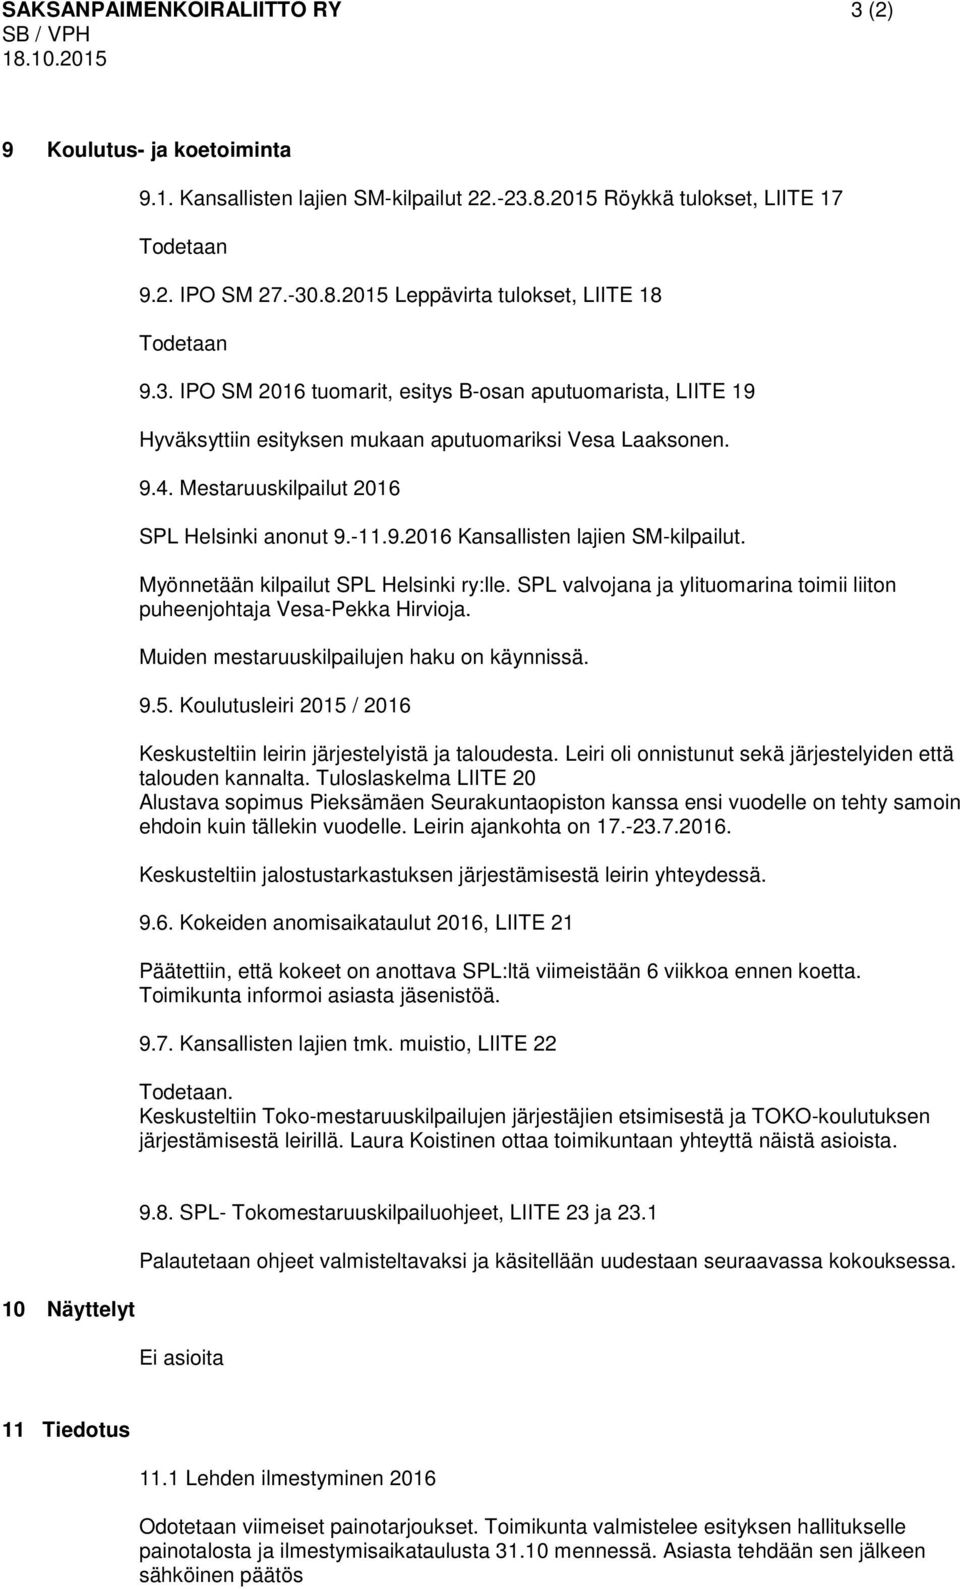 Myönnetään kilpailut SPL Helsinki ry:lle. SPL valvojana ja ylituomarina toimii liiton puheenjohtaja Vesa-Pekka Hirvioja. Muiden mestaruuskilpailujen haku on käynnissä. 9.5.